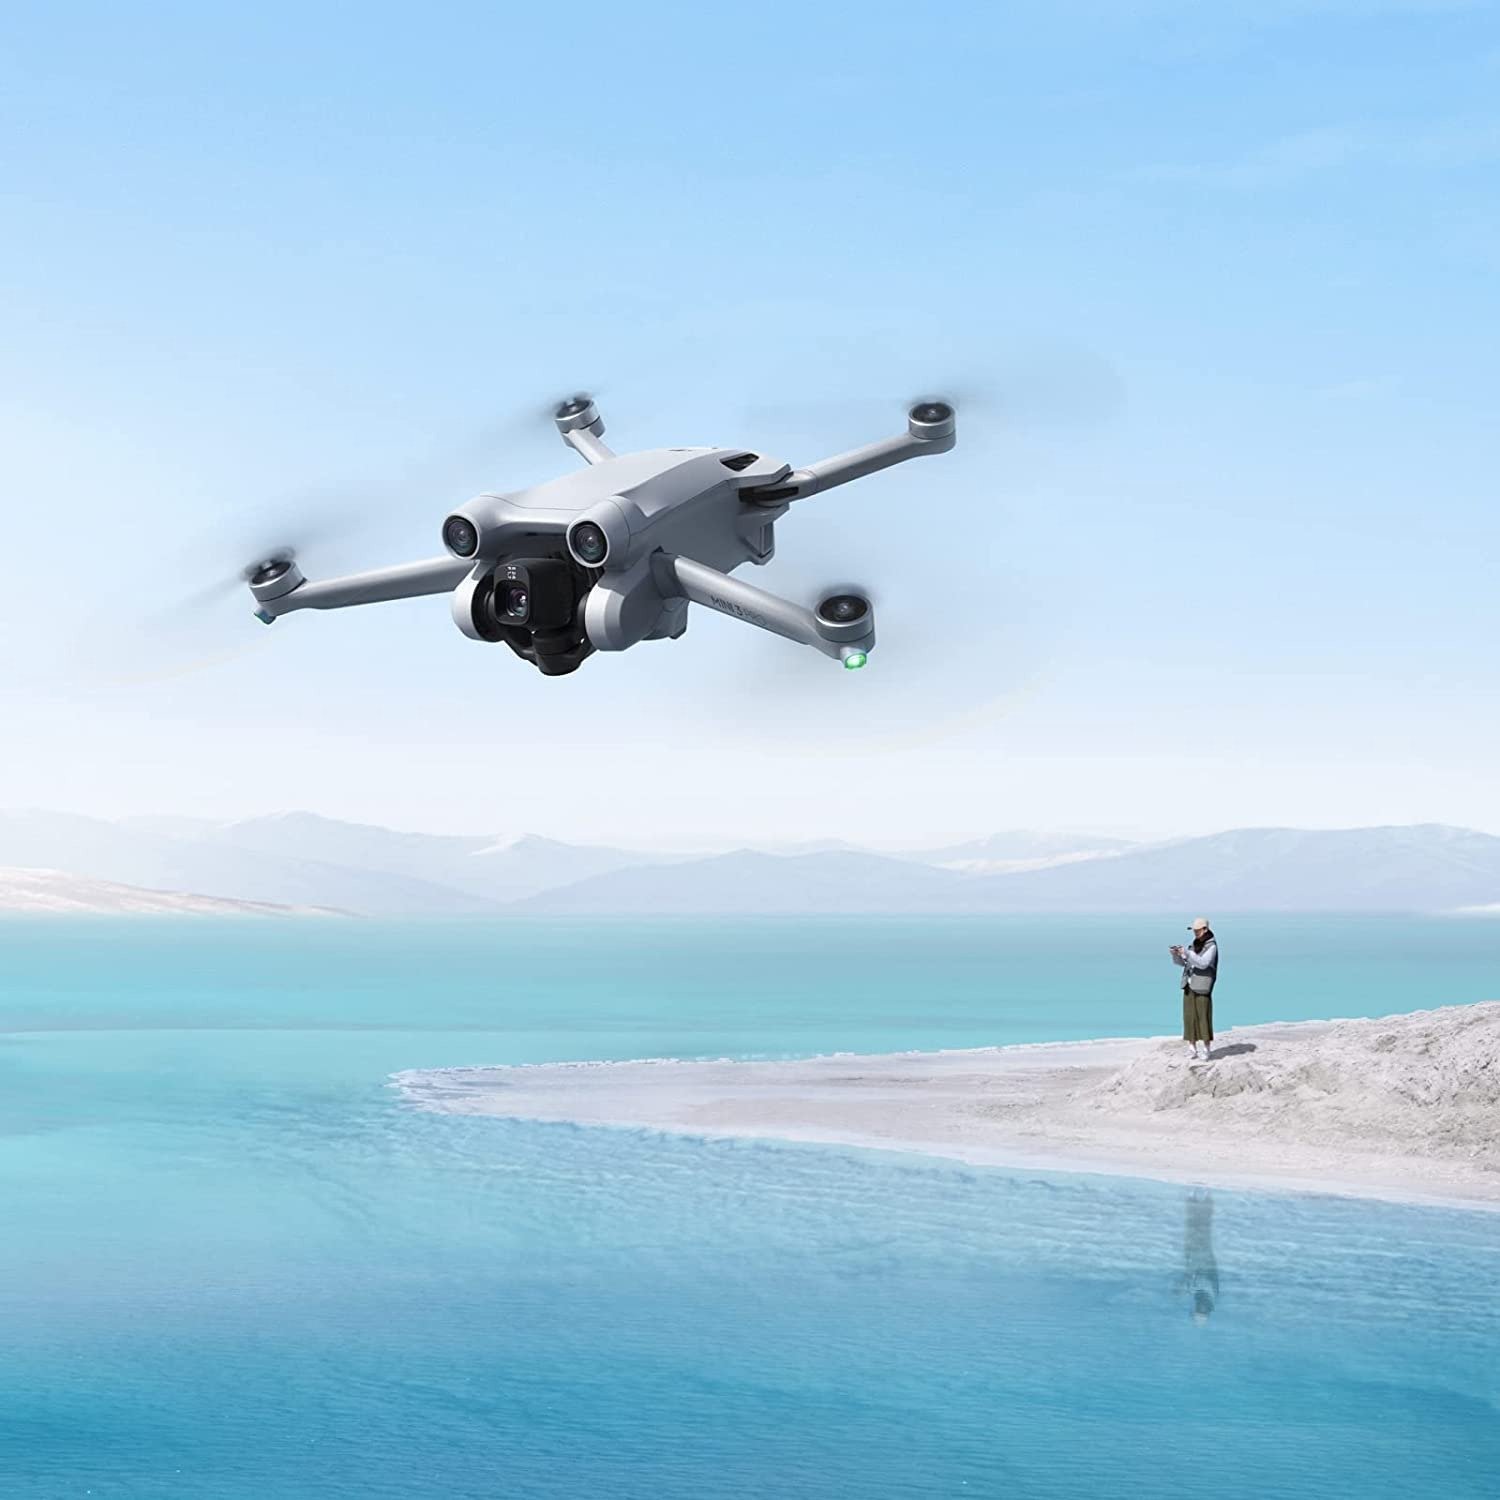 El Gobierno modifica la normativa reguladora de l'ús de drons per donar un nou impuls a aquesta tecnologia